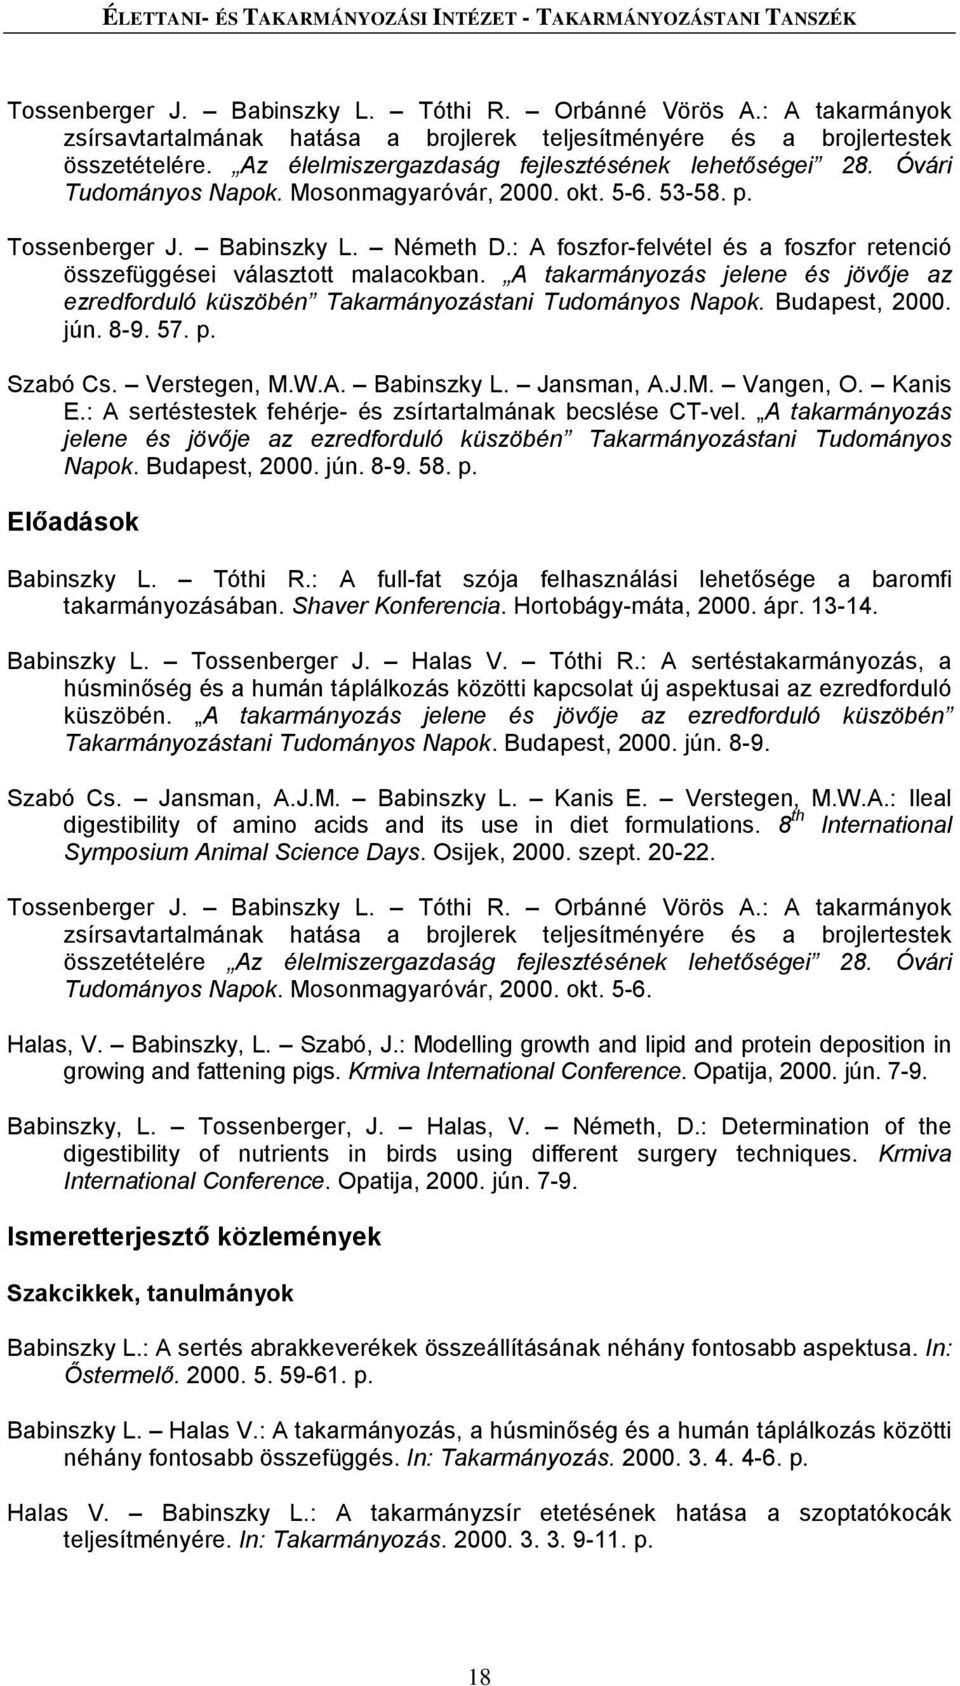 Mosonmagyaróvár, 2000. okt. 5-6. 53-58. p. Tossenberger J. Babinszky L. Németh D.: A foszfor-felvétel és a foszfor retenció összefüggései választott malacokban.